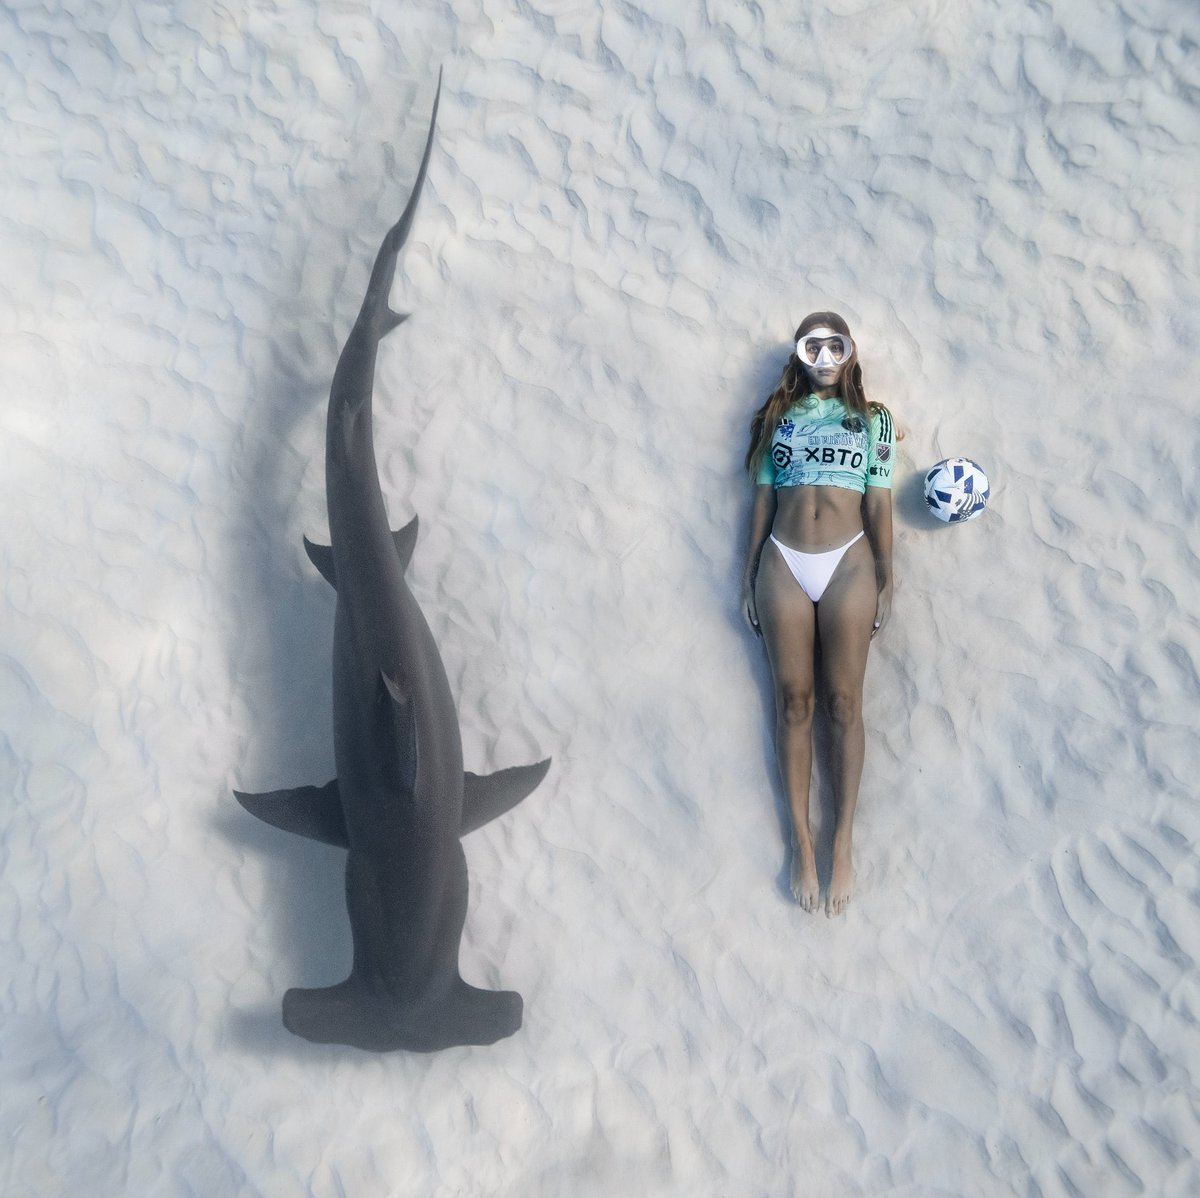 🦈 Inter Miami, iklim değişikliği ve çevre kirliliğine dikkat çekmek amacıyla 22 Nisan Dünya Günü'ne özel plastik içermeyen özel formasını su altında köpekbalıklarıyla tanıttı.